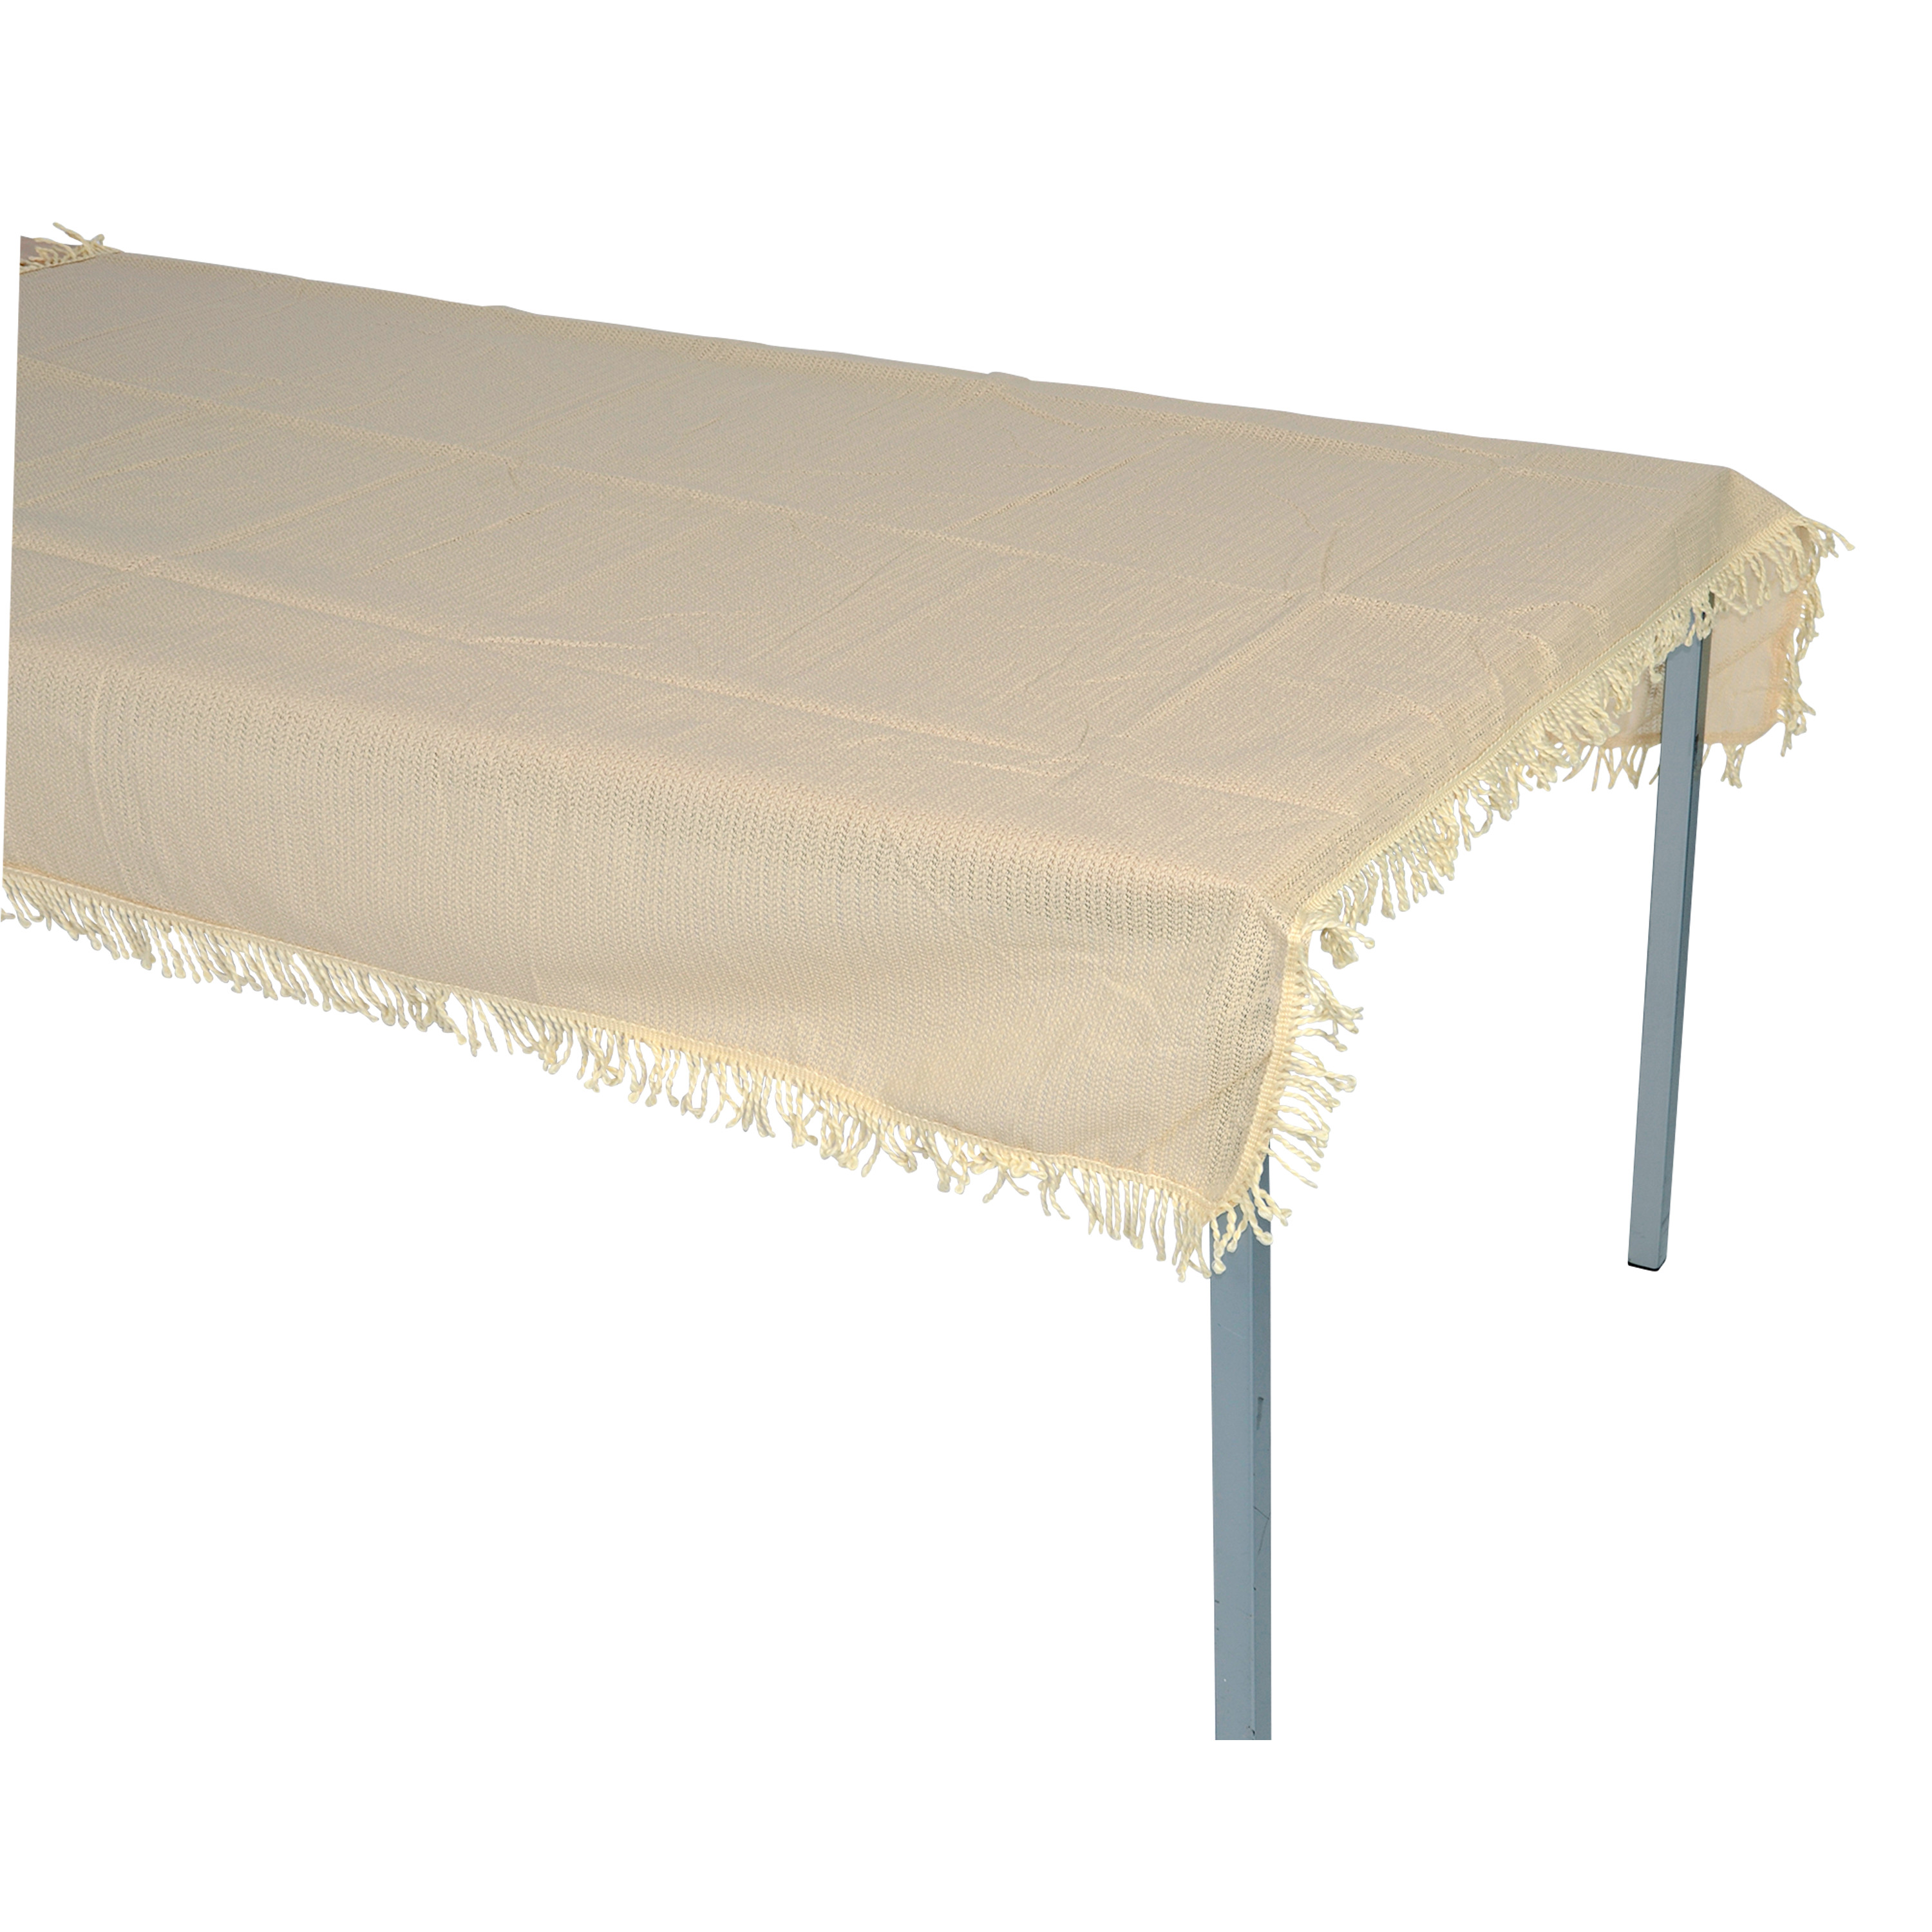 Tischdecke aus Kunststoff 140x220cm rechteckig, beige, wetterfest